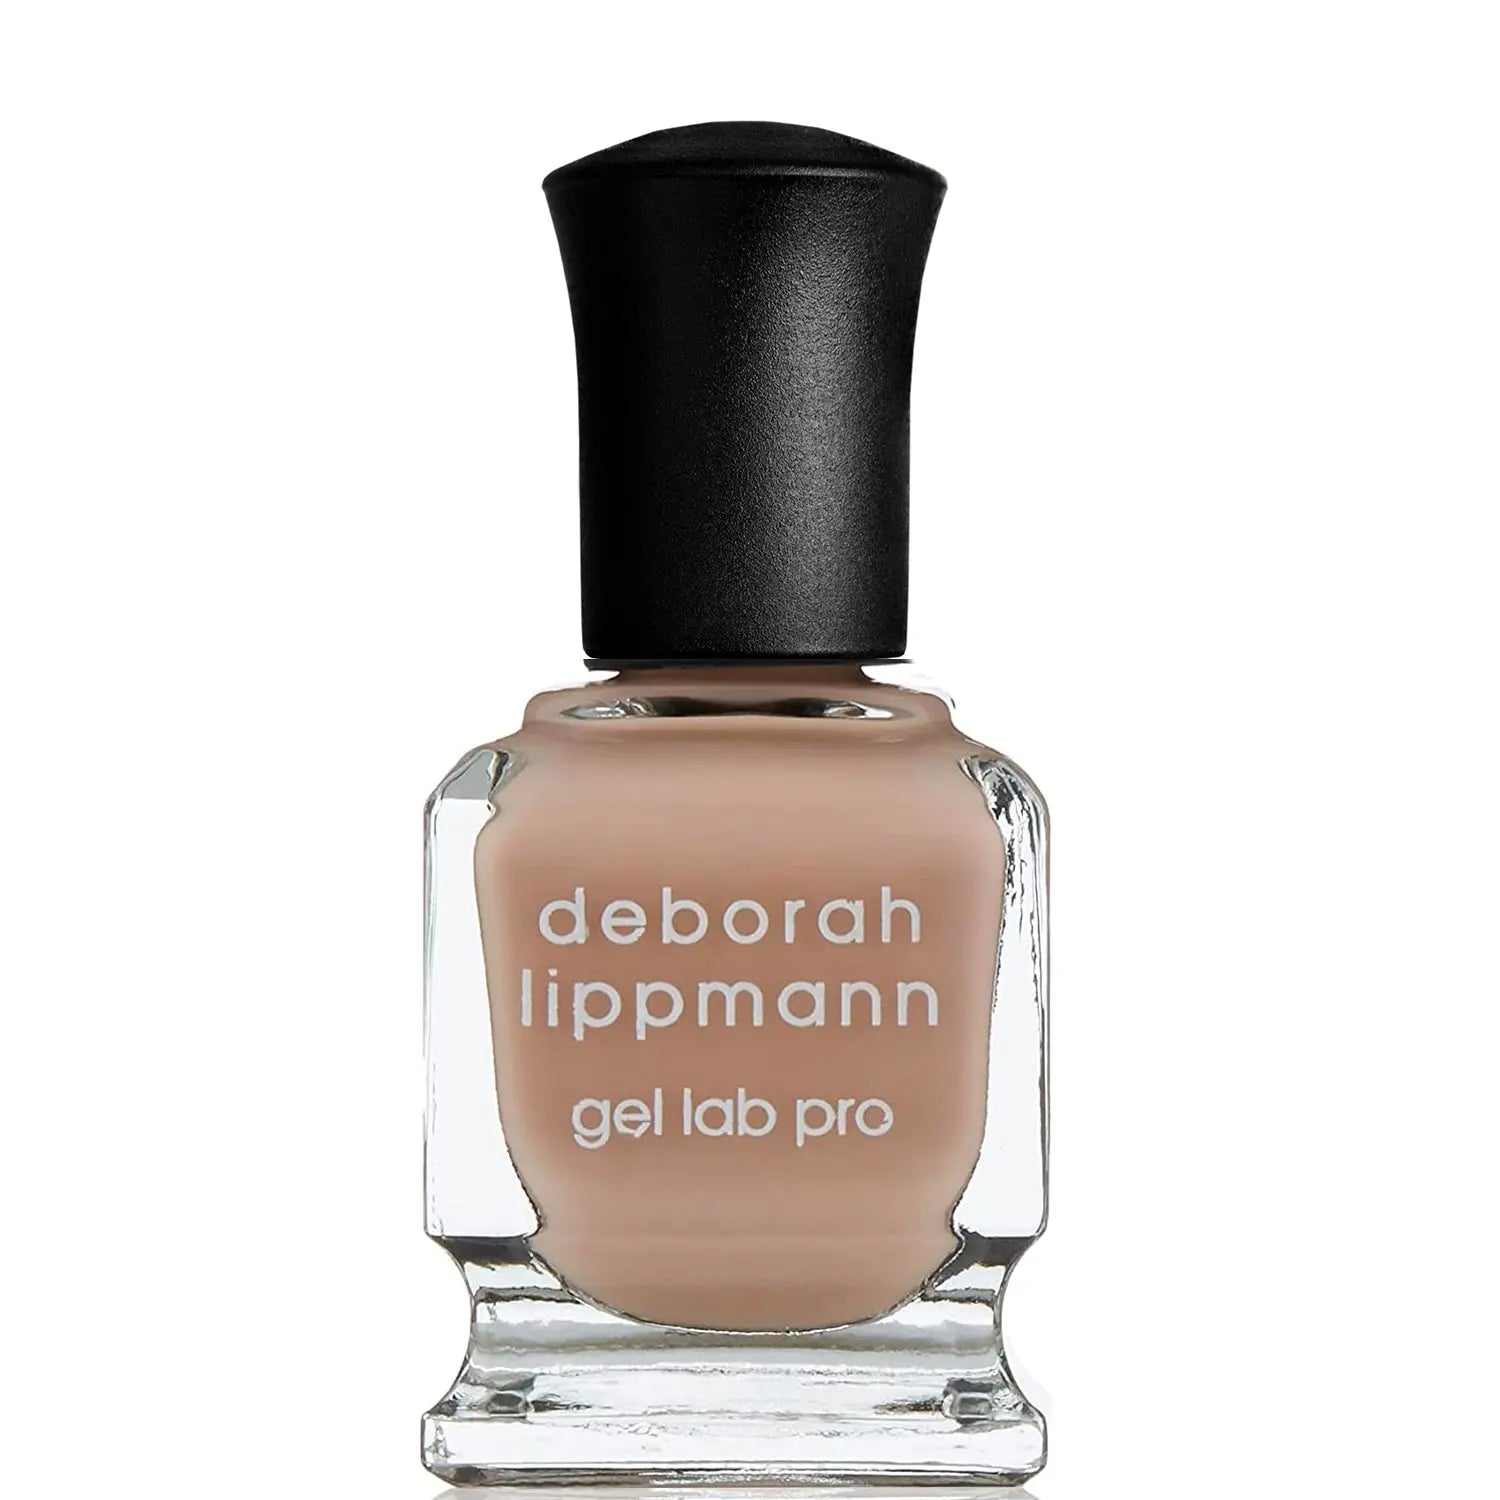 Deborah Lippmann | Gel Lab Pro Color Nail Polish DESPACITO sold out